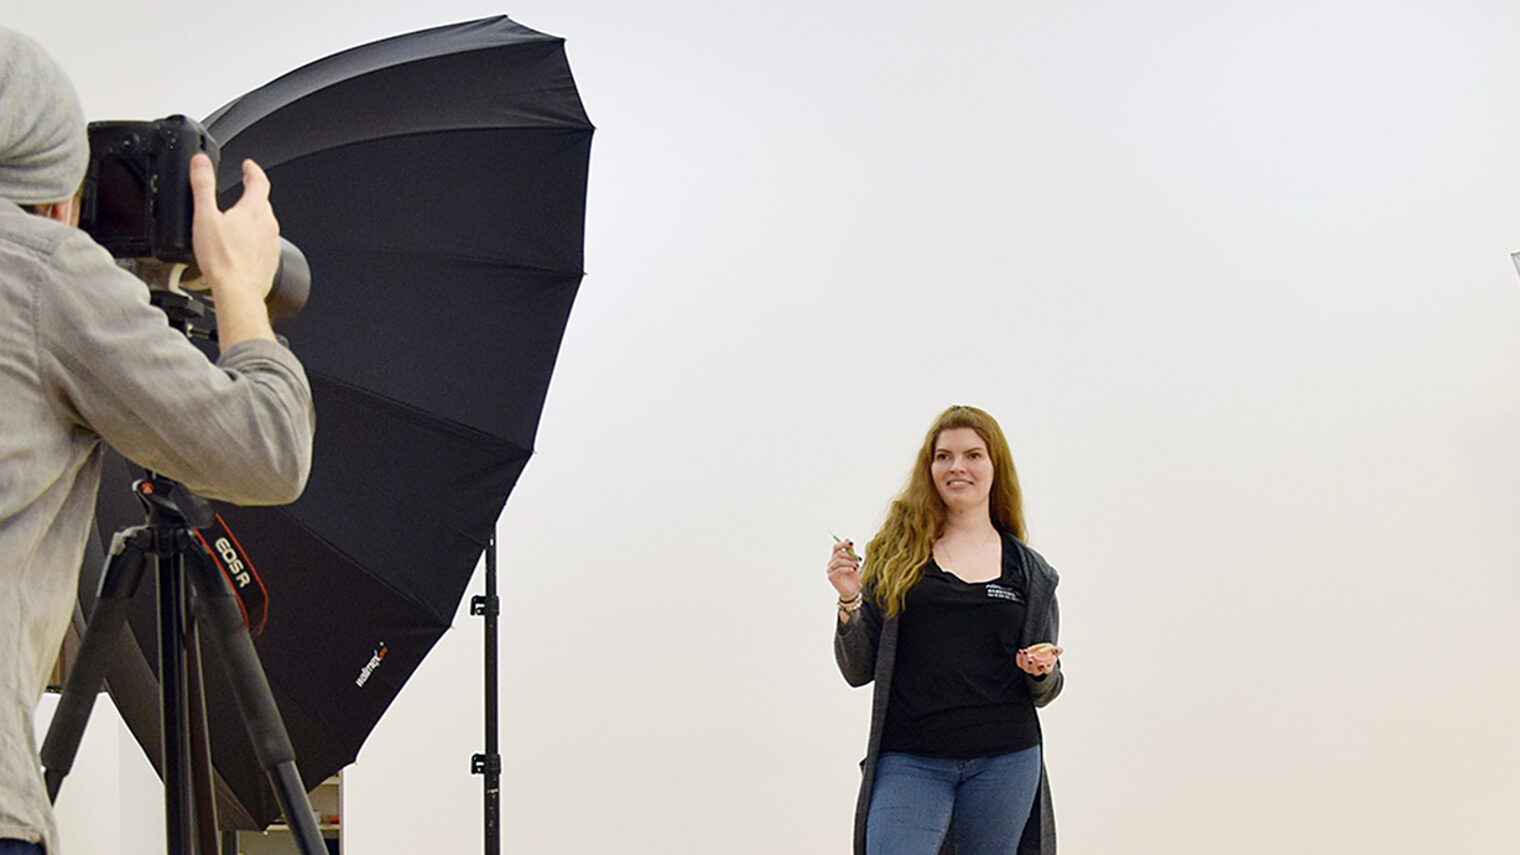 Ausbildungsbotschafterin Chantal Kilian beim Fotoshooting für die Aktion "Eine Woche ¿ Deine Chance". Die 23-Jährige ist Zahntechnikerin und möchte ihre guten Erfahrungen als Handwerkerin auch anderen Jugendlichen vermitteln.